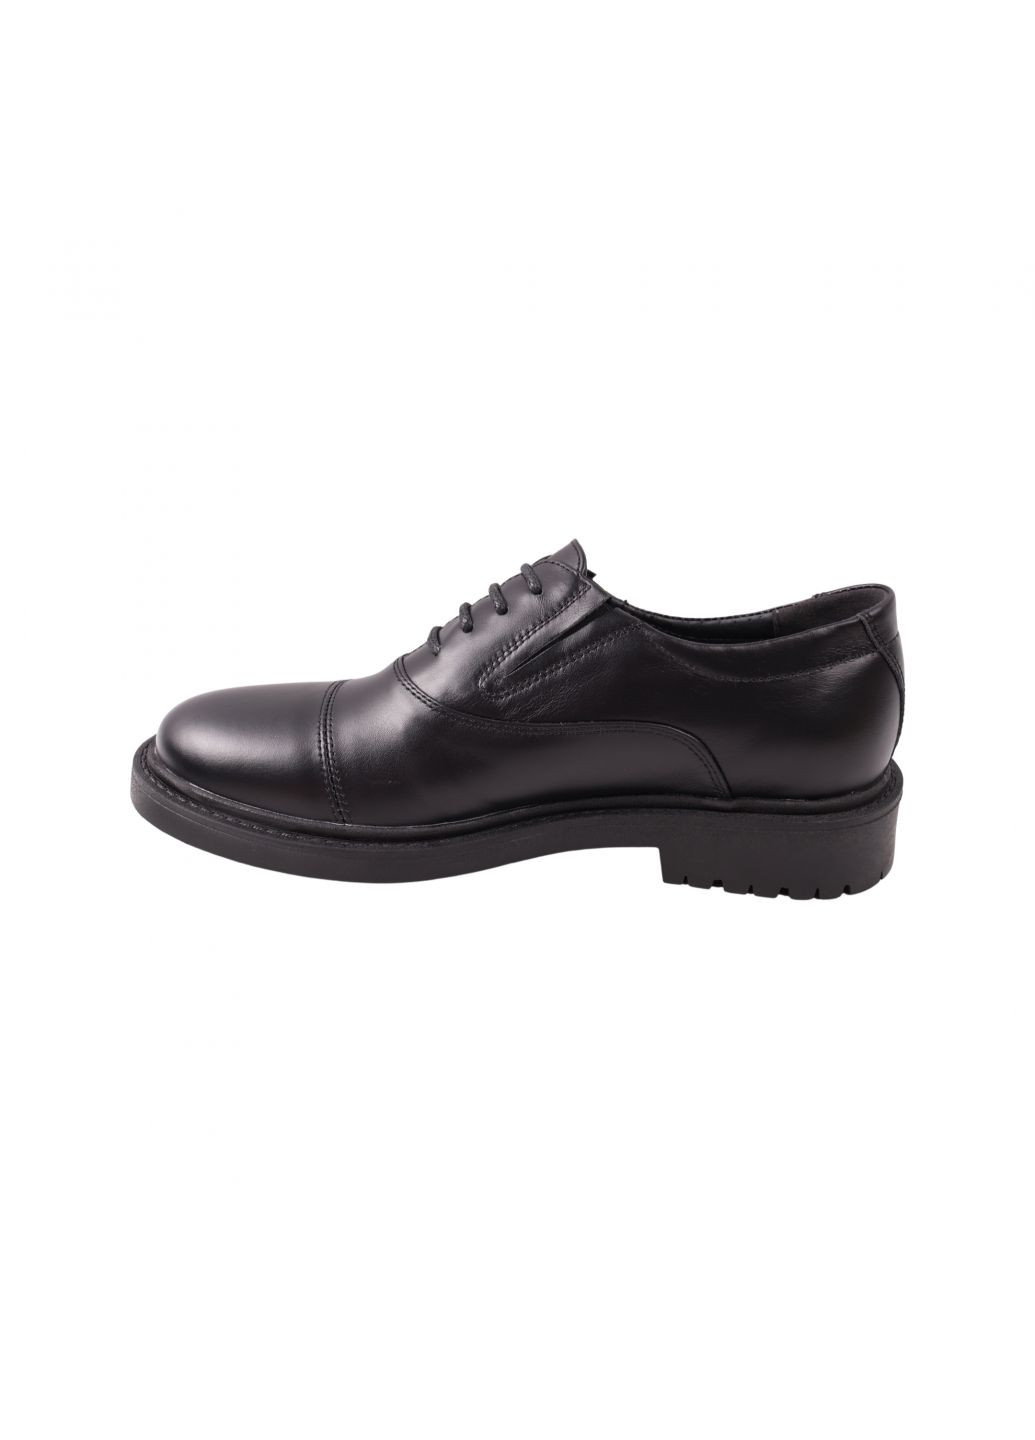 Черные туфли мужские черные натуральная кожа Maxus Shoes